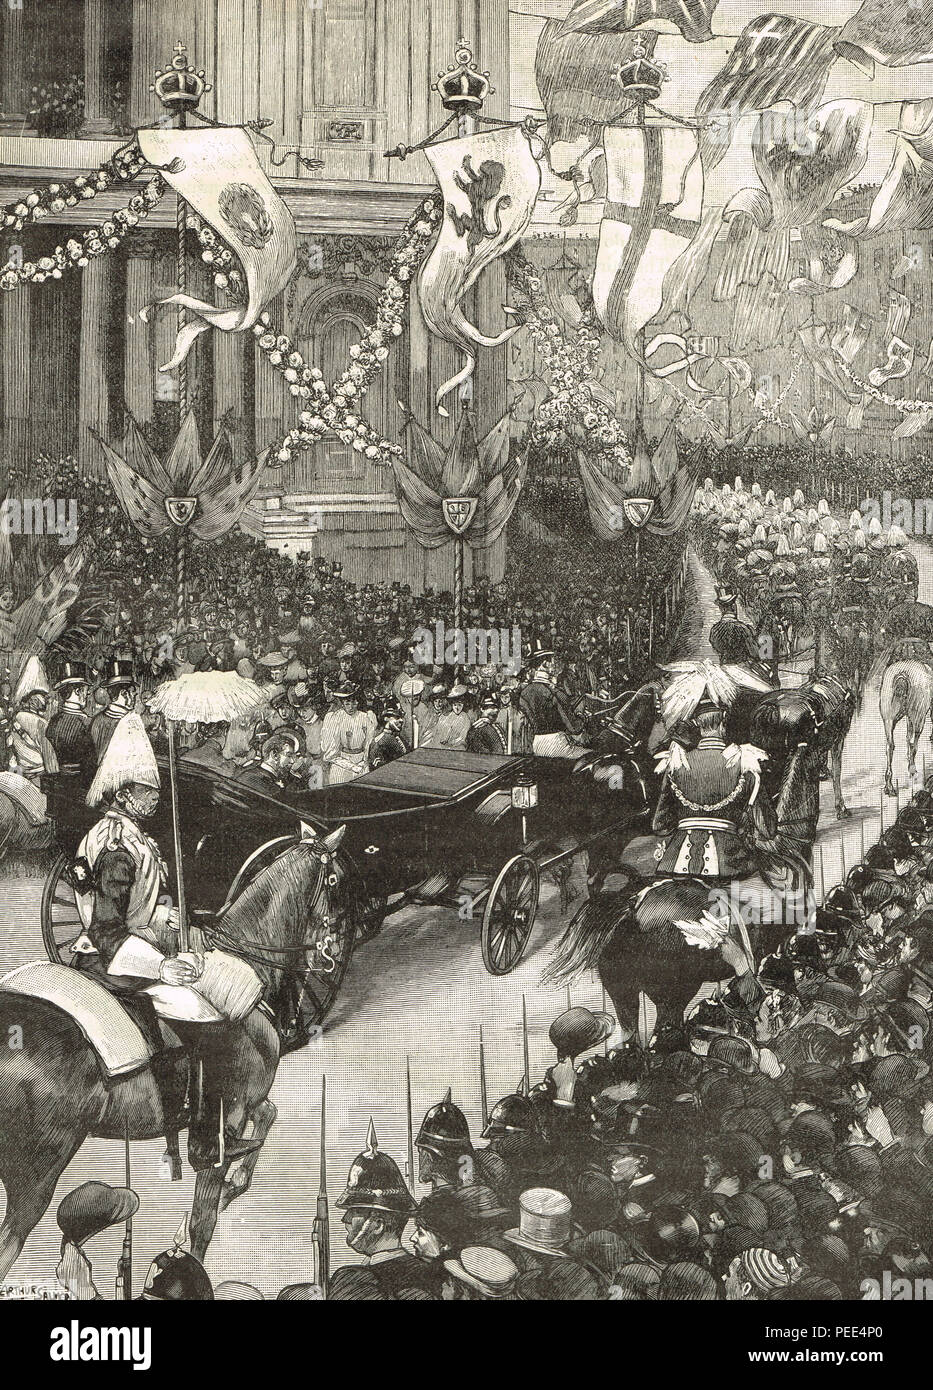 Nozze del principe George, duca di York e la Principessa Maria di teck. Il corteo reale passando dalla Cattedrale di St Paul en route a St James Palace di Londra, 6 Luglio 1893 Foto Stock